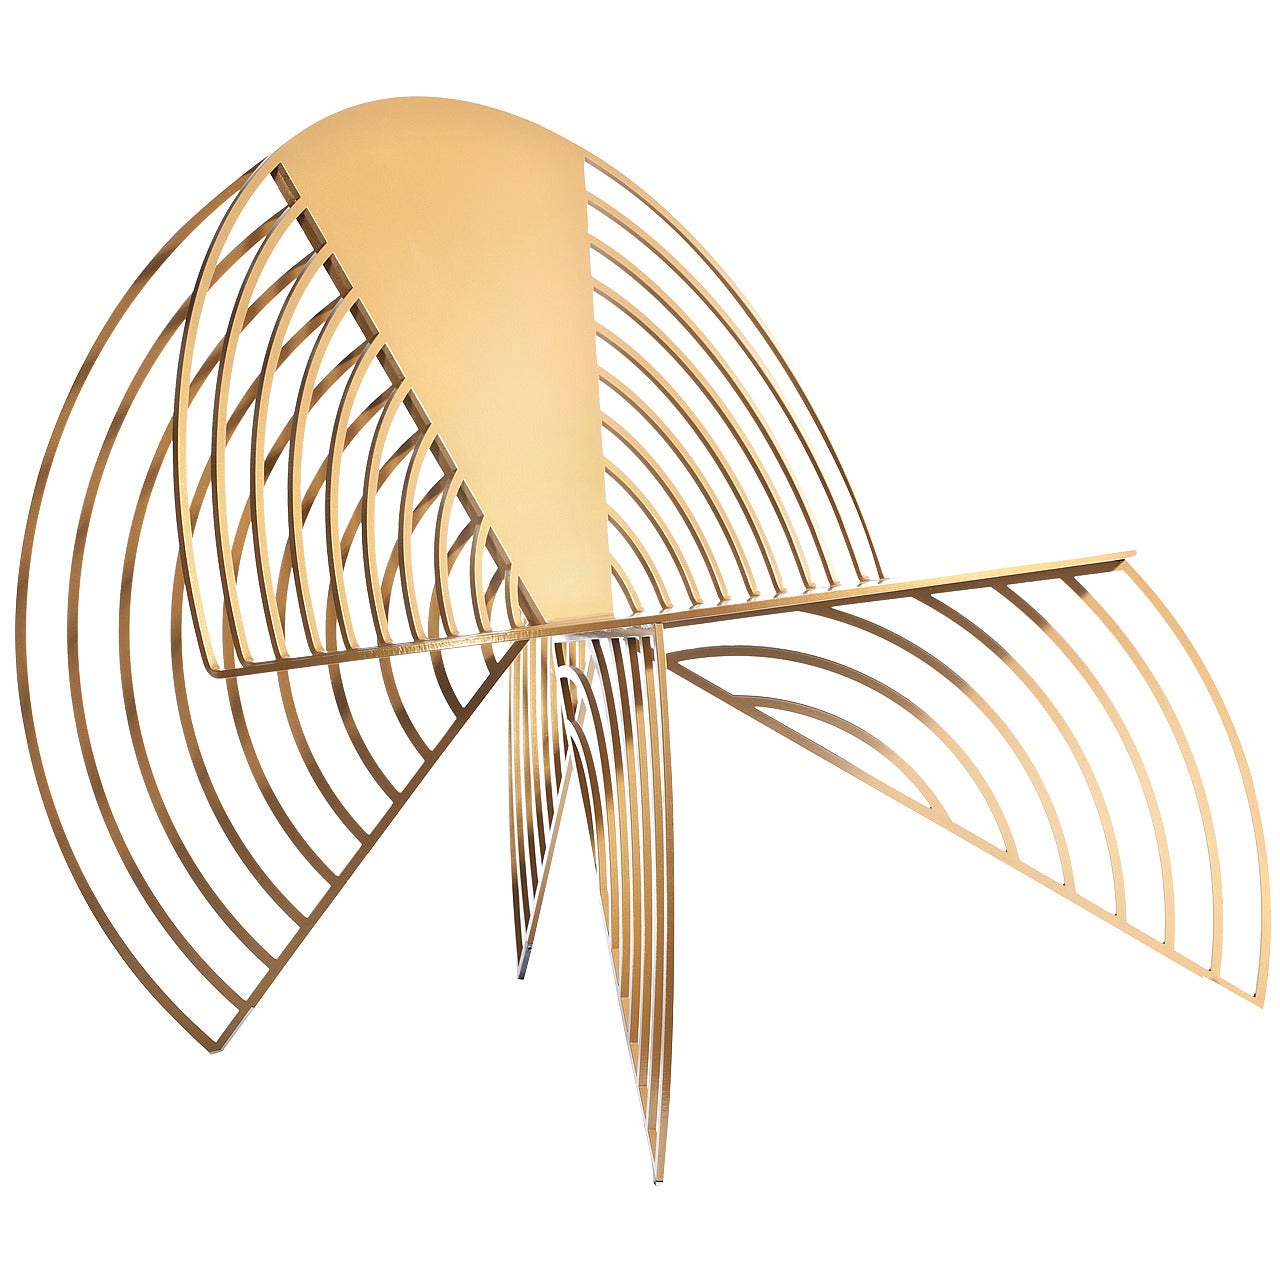 Golden Wings of Steel Chair:: entworfen von Laurie Beckerman im Jahr 2012